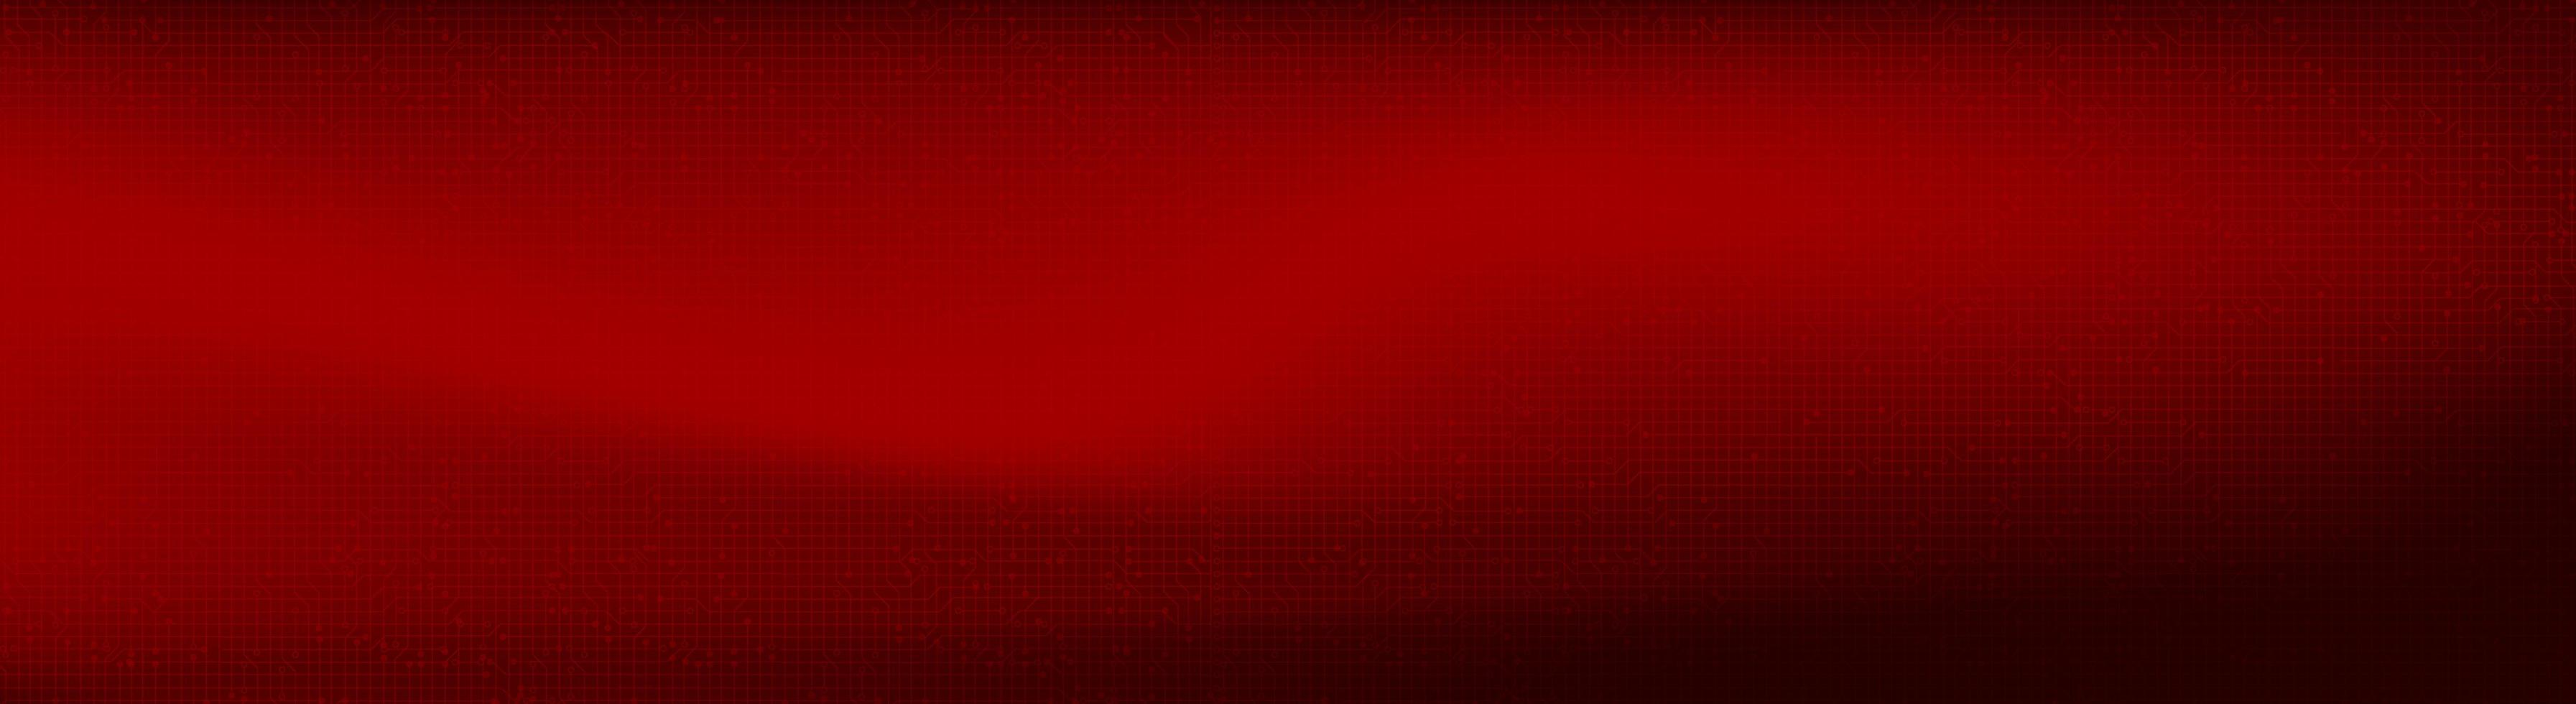 Panorama de microchip digital rojo sobre fondo de tecnología vector